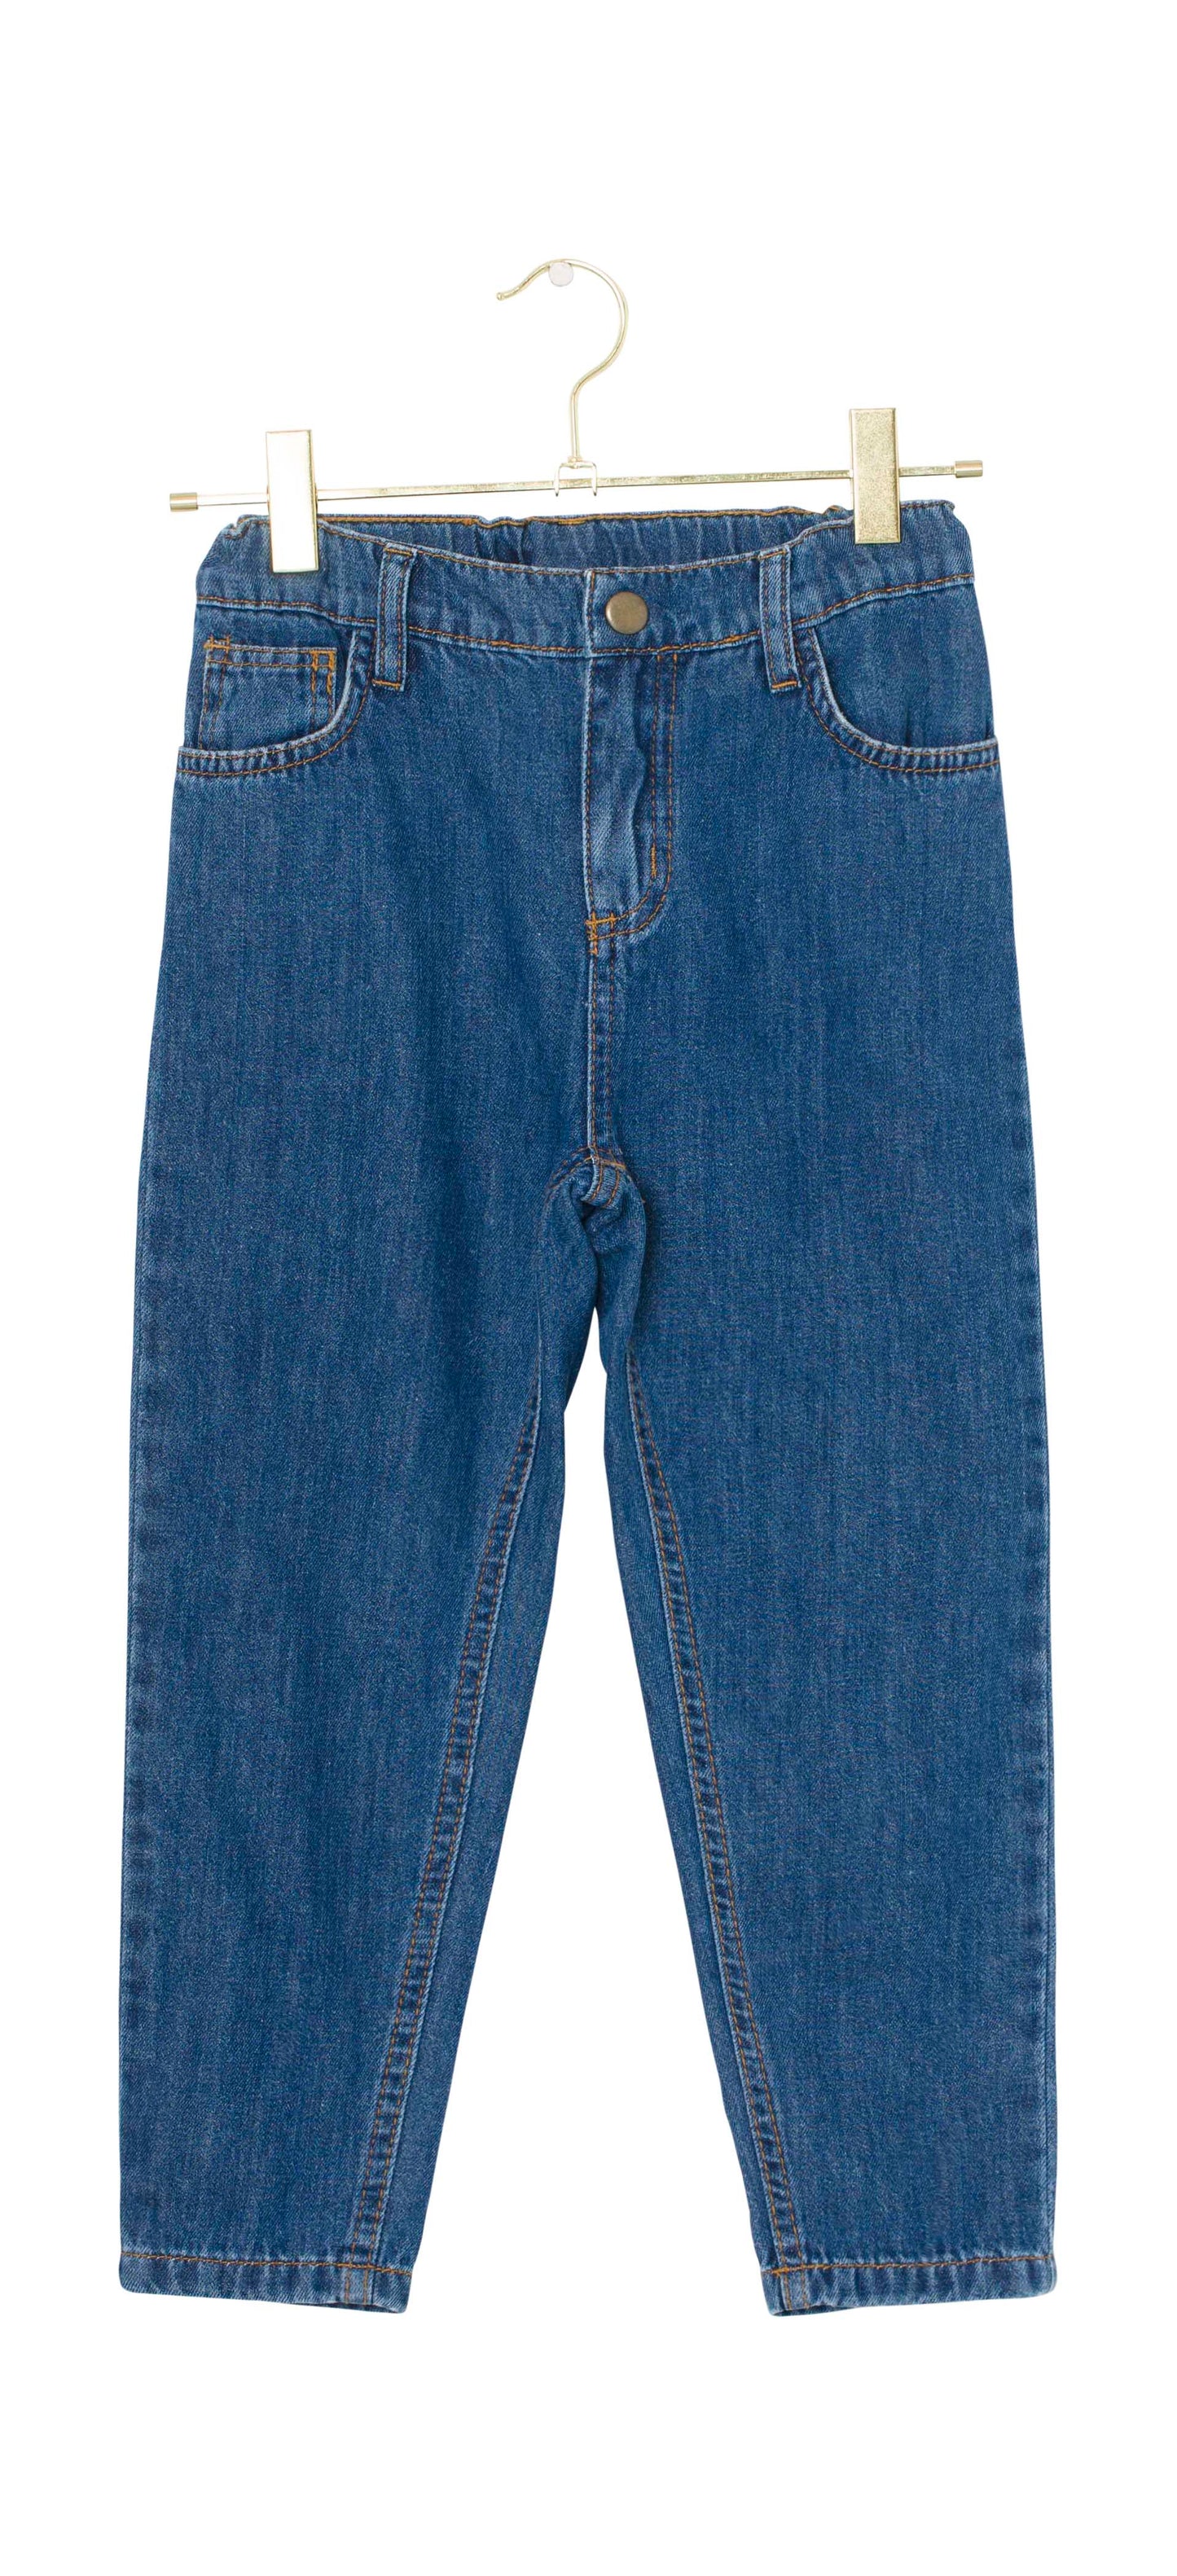 Carl Zip Sweatshirt & Vintage Blake Jeans